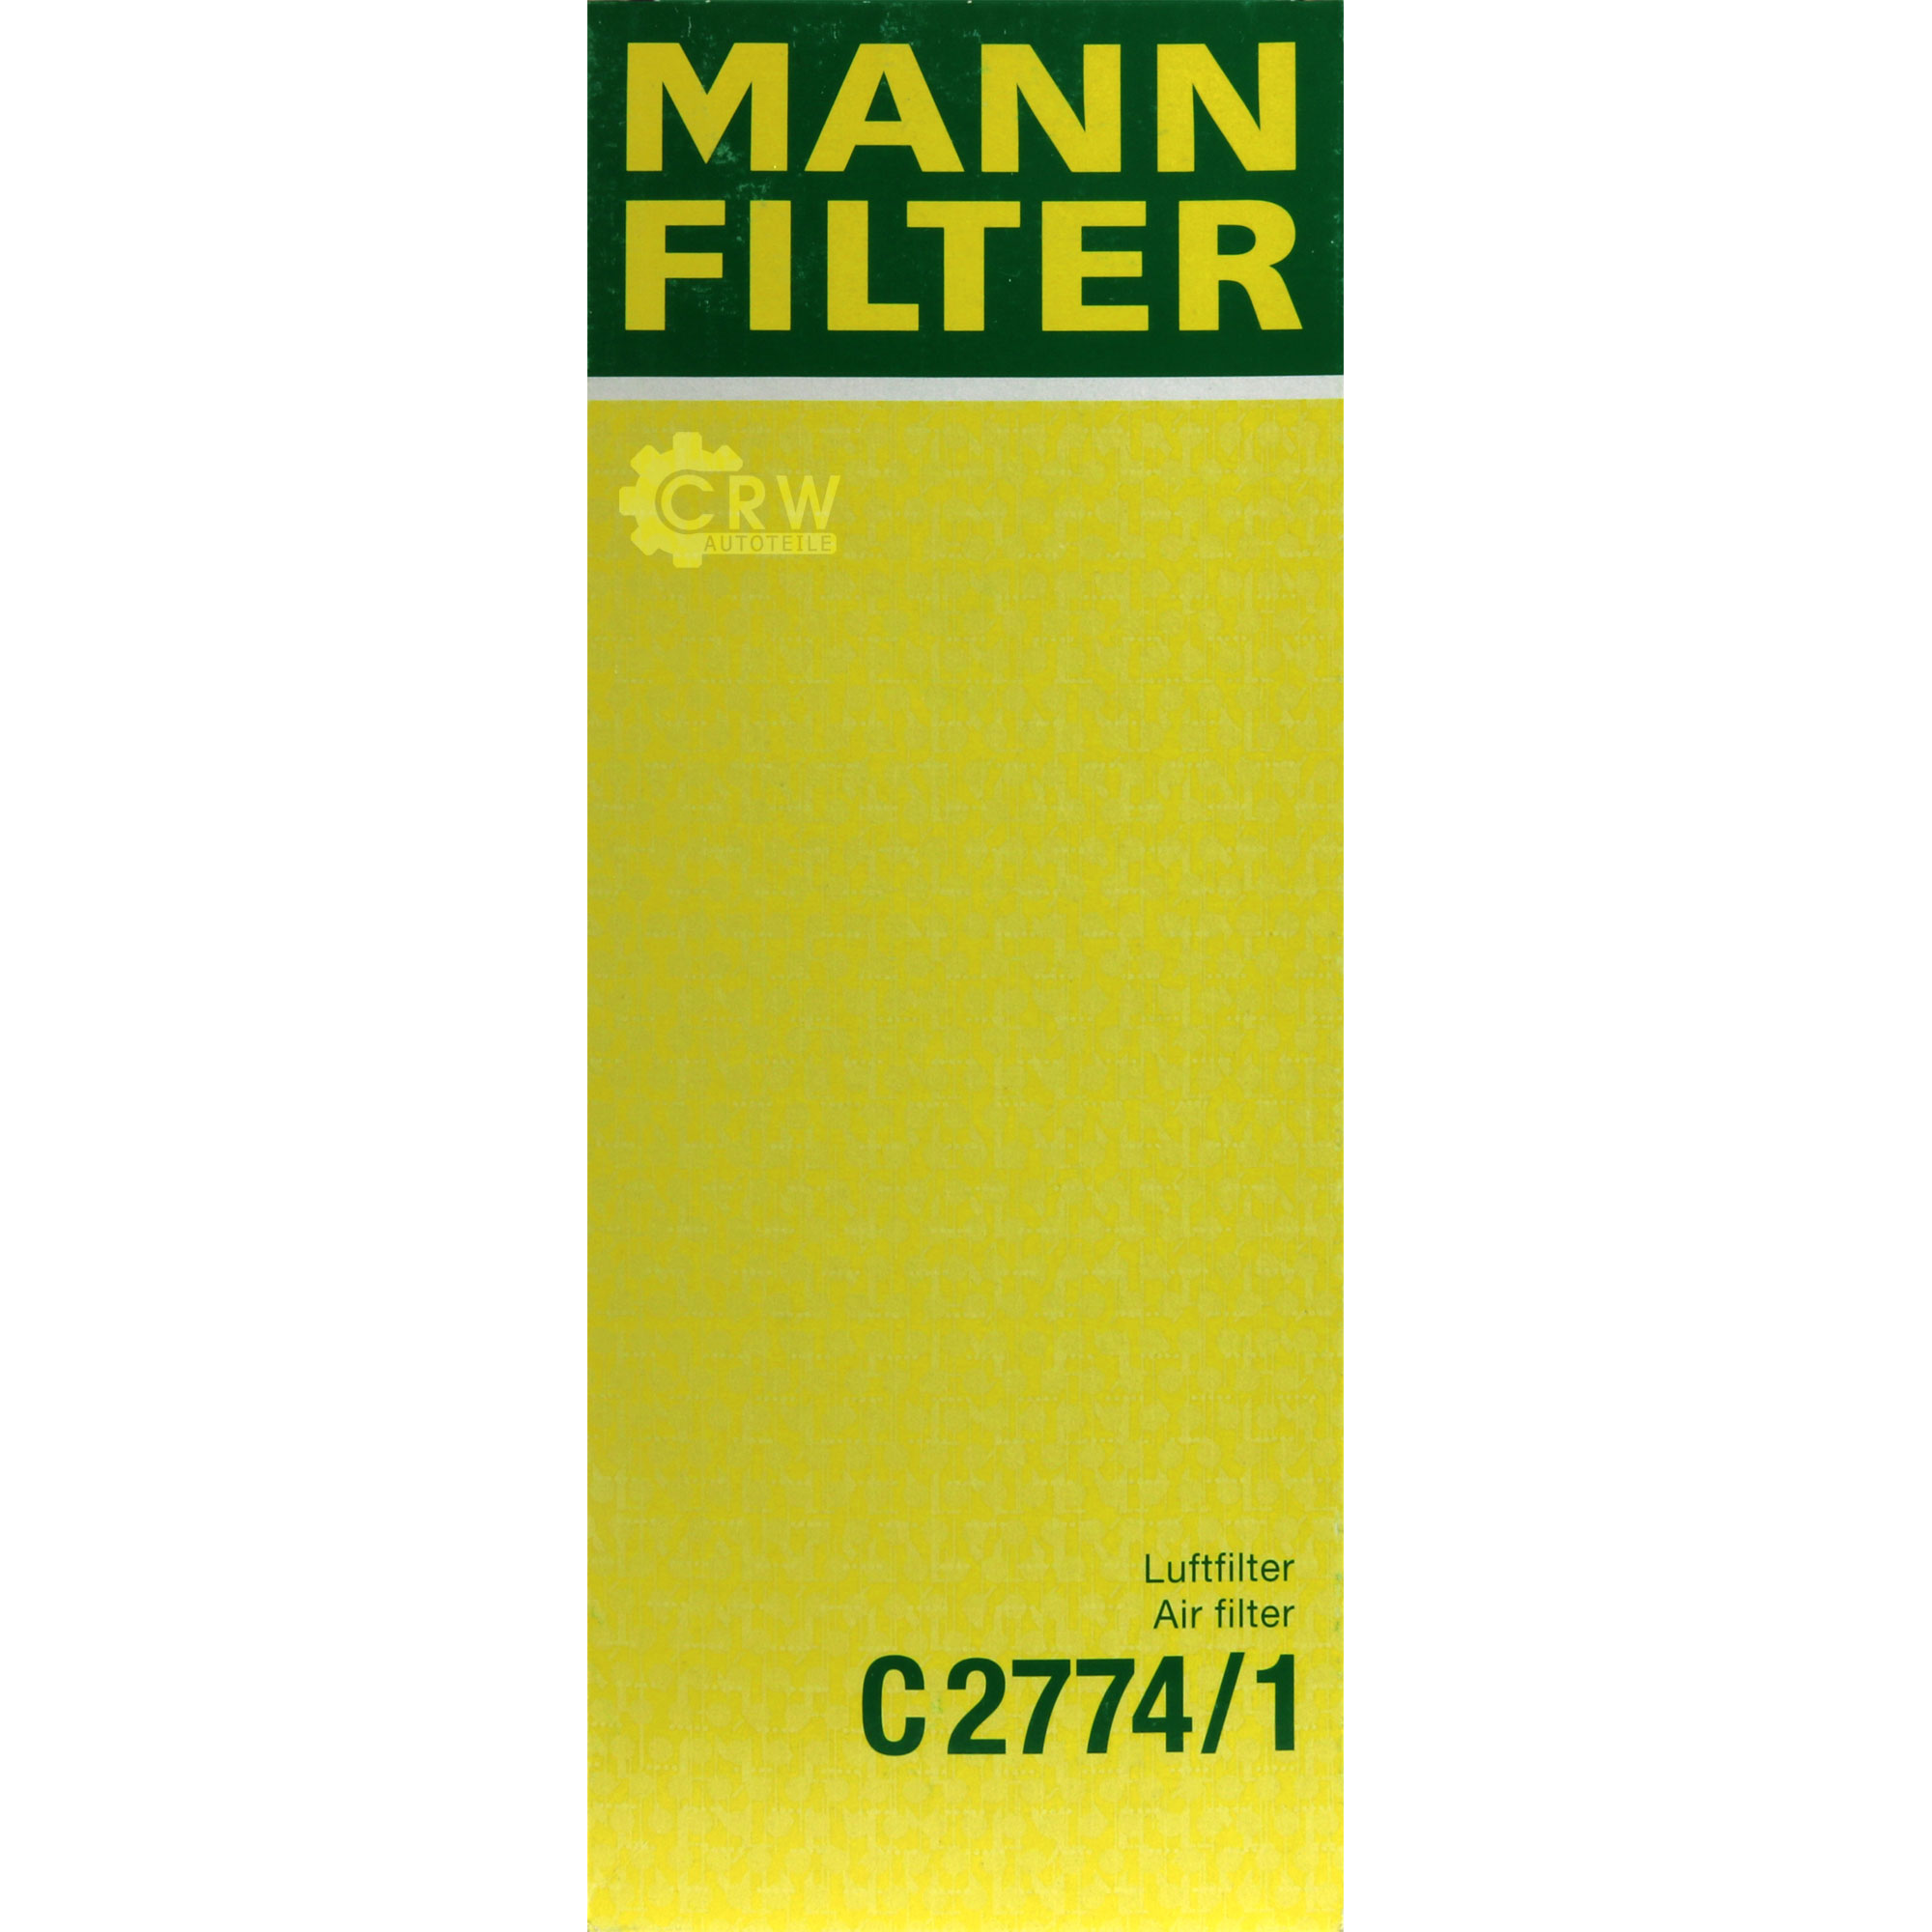 MANN-FILTER Luftfilter für MG MGF RD 1.8i 16V Lotus Elise Exige SCC_ 1.8